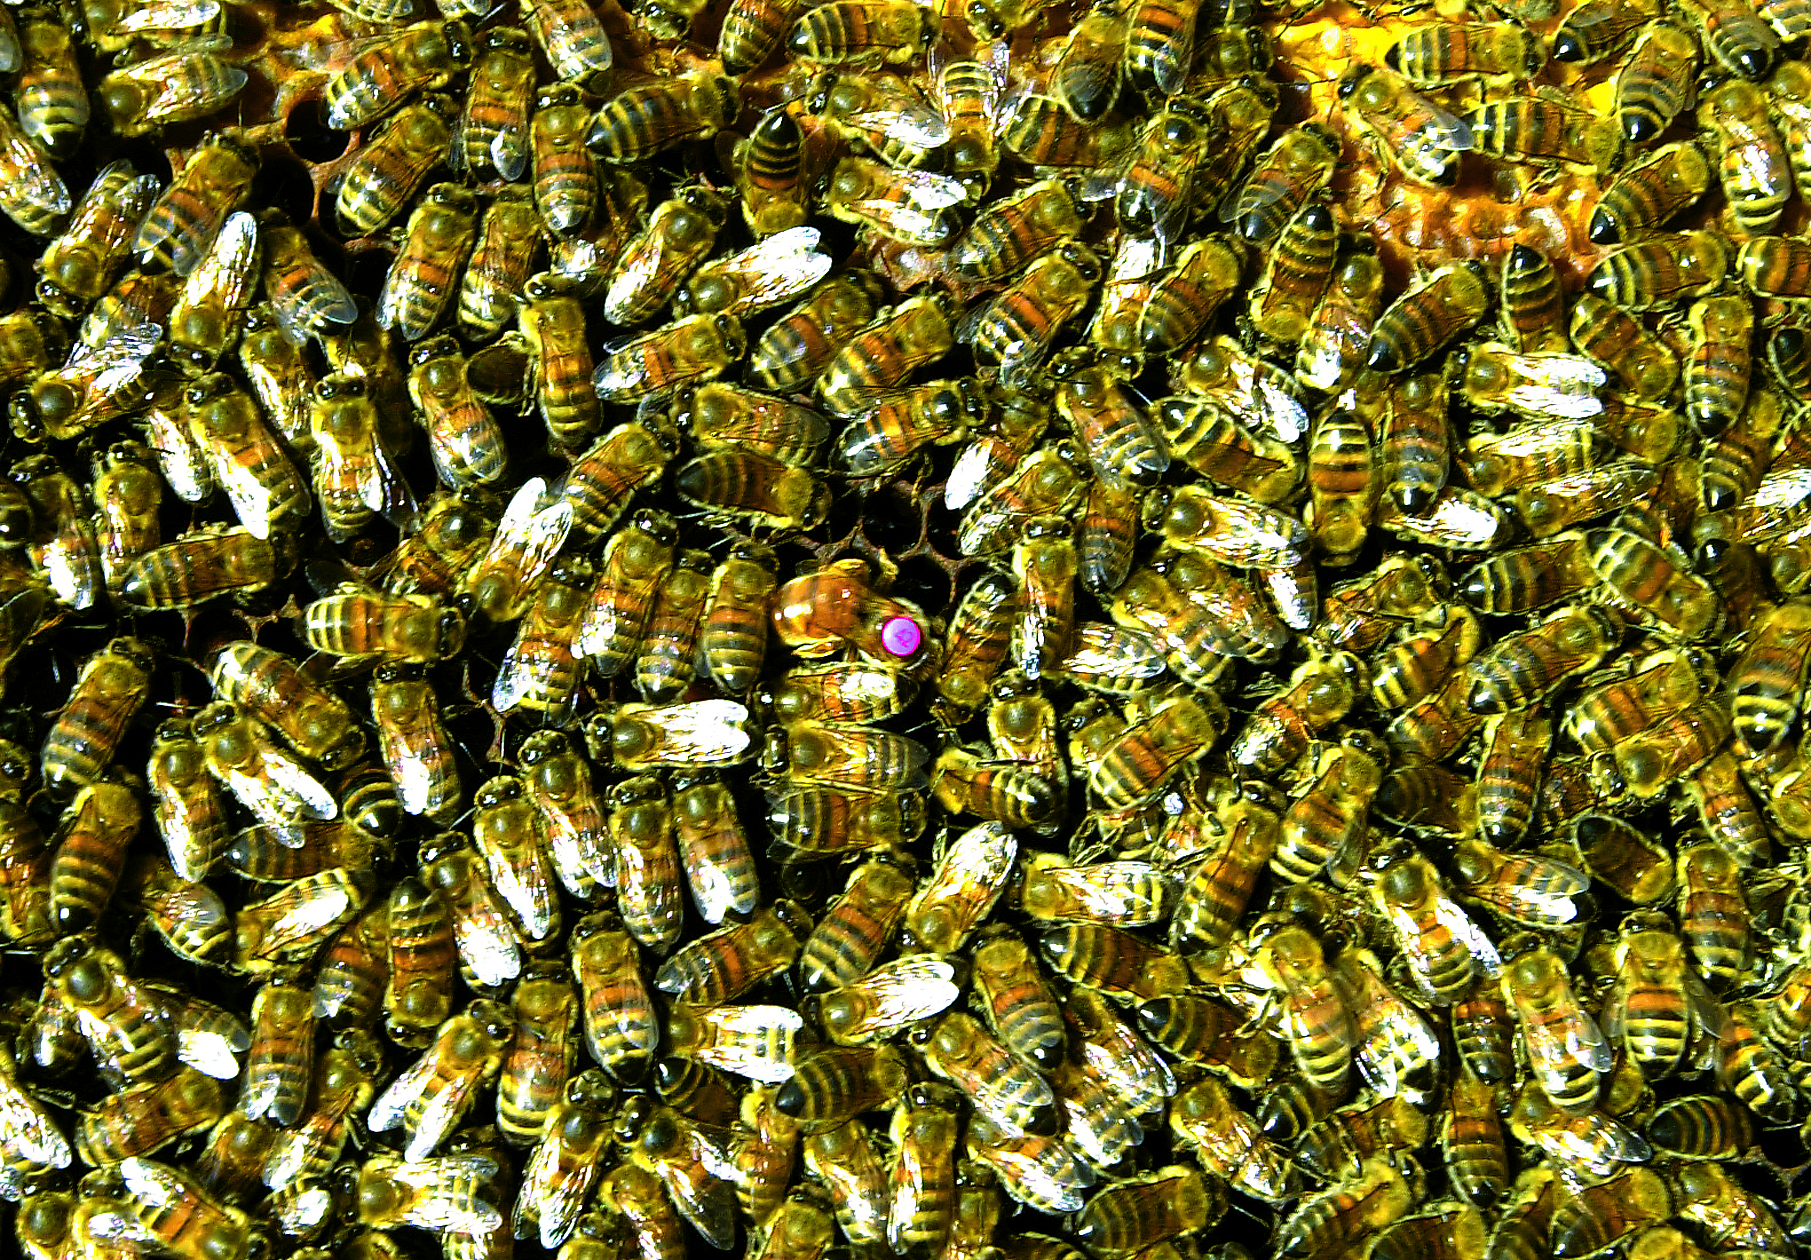 Centenars d'abelles dins una caera. (Foto: Pep Vicens)